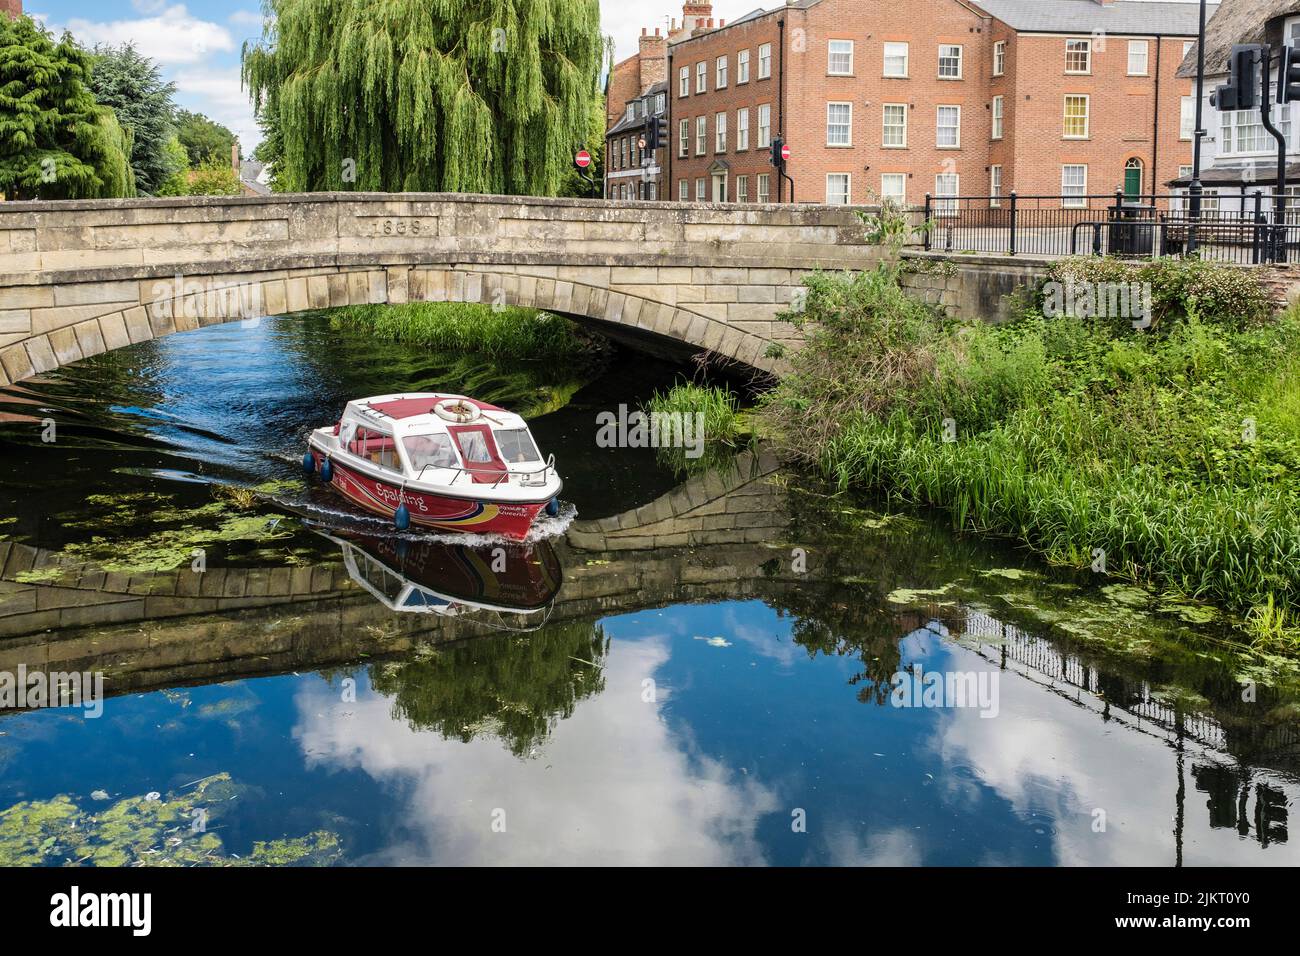 Un taxi acuático que pasa por debajo del viejo puente sobre el río Welland. Spalding, Lincolnshire, Inglaterra, Reino Unido, Gran Bretaña Foto de stock